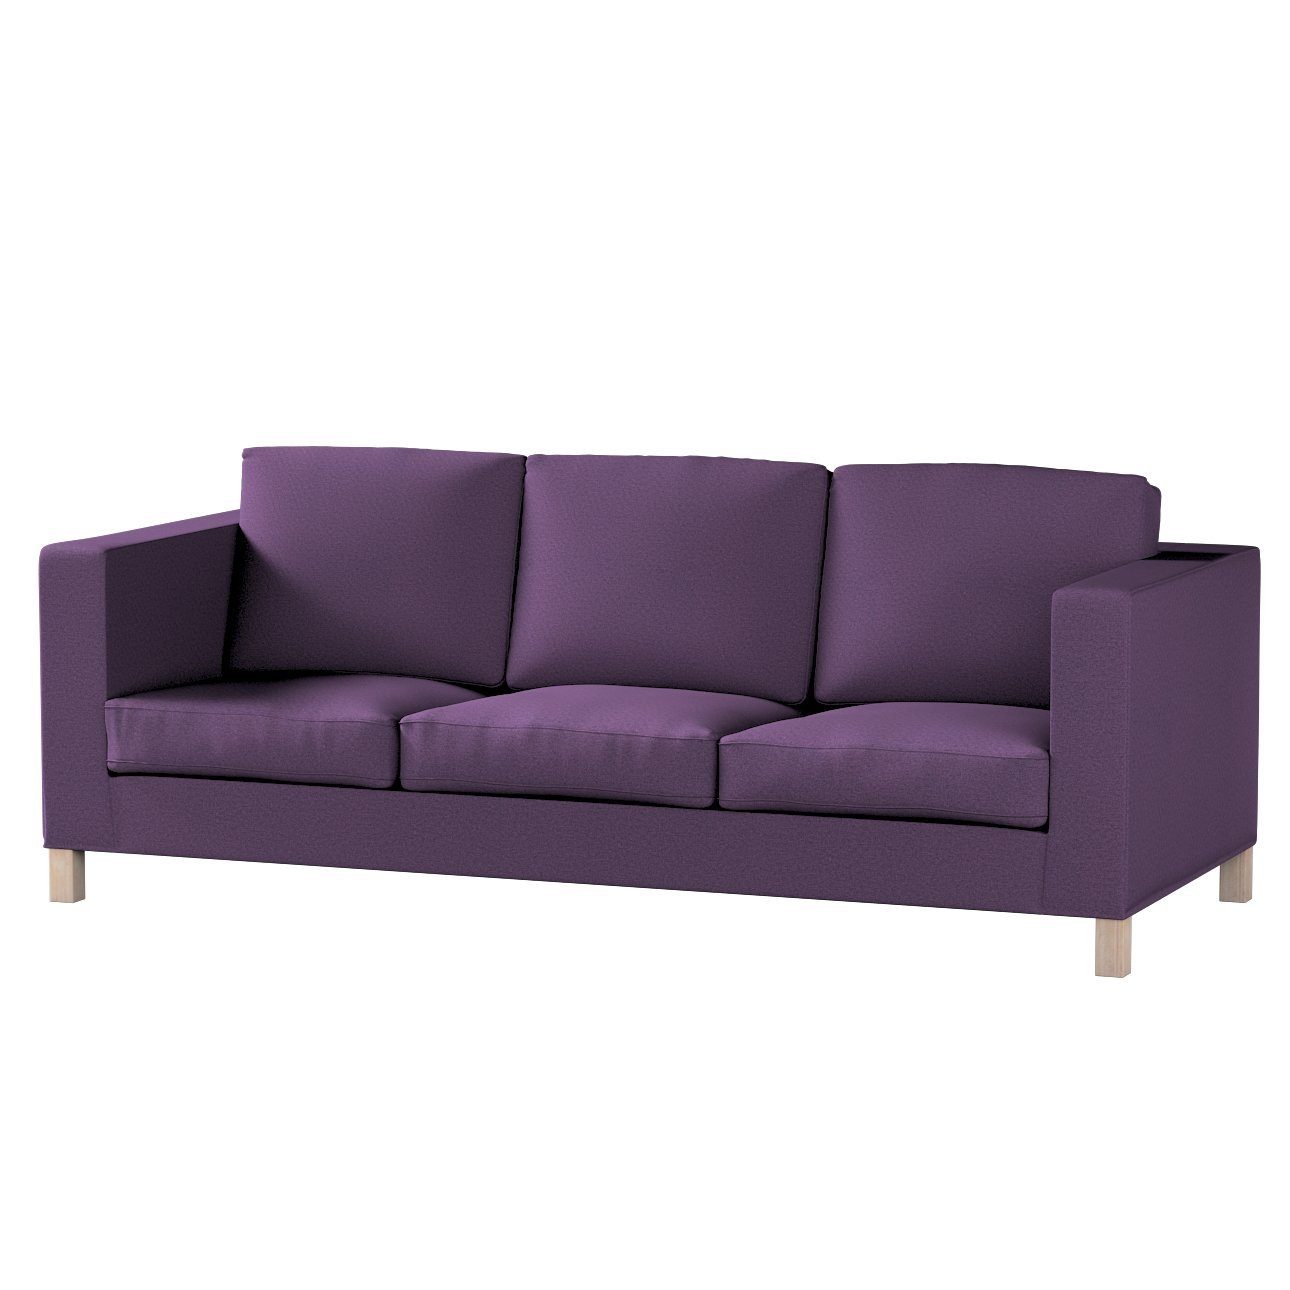 Sofahusse Karlanda 3-Sitzer Sofa nicht ausklappbar kurz, Etna, Dekoria violett | Sofahussen